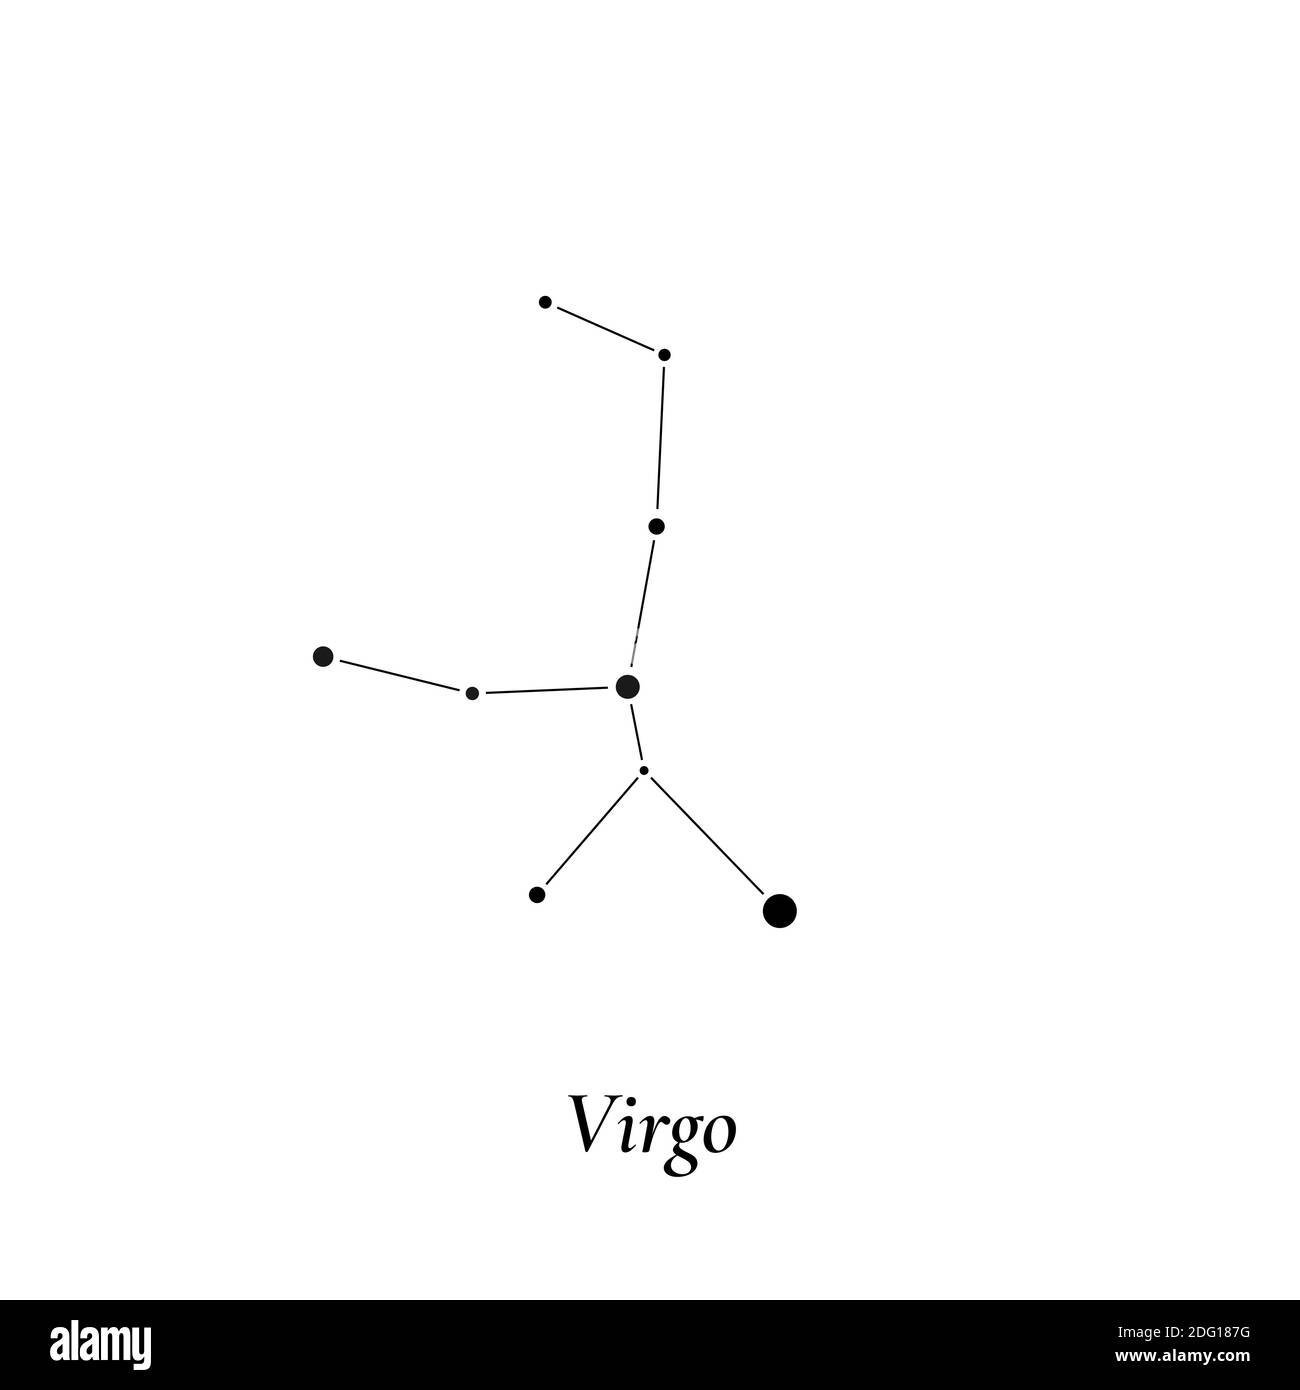 Segno di Virgo. Mappa delle stelle della costellazione zodiacale. Illustrazione vettoriale Illustrazione Vettoriale